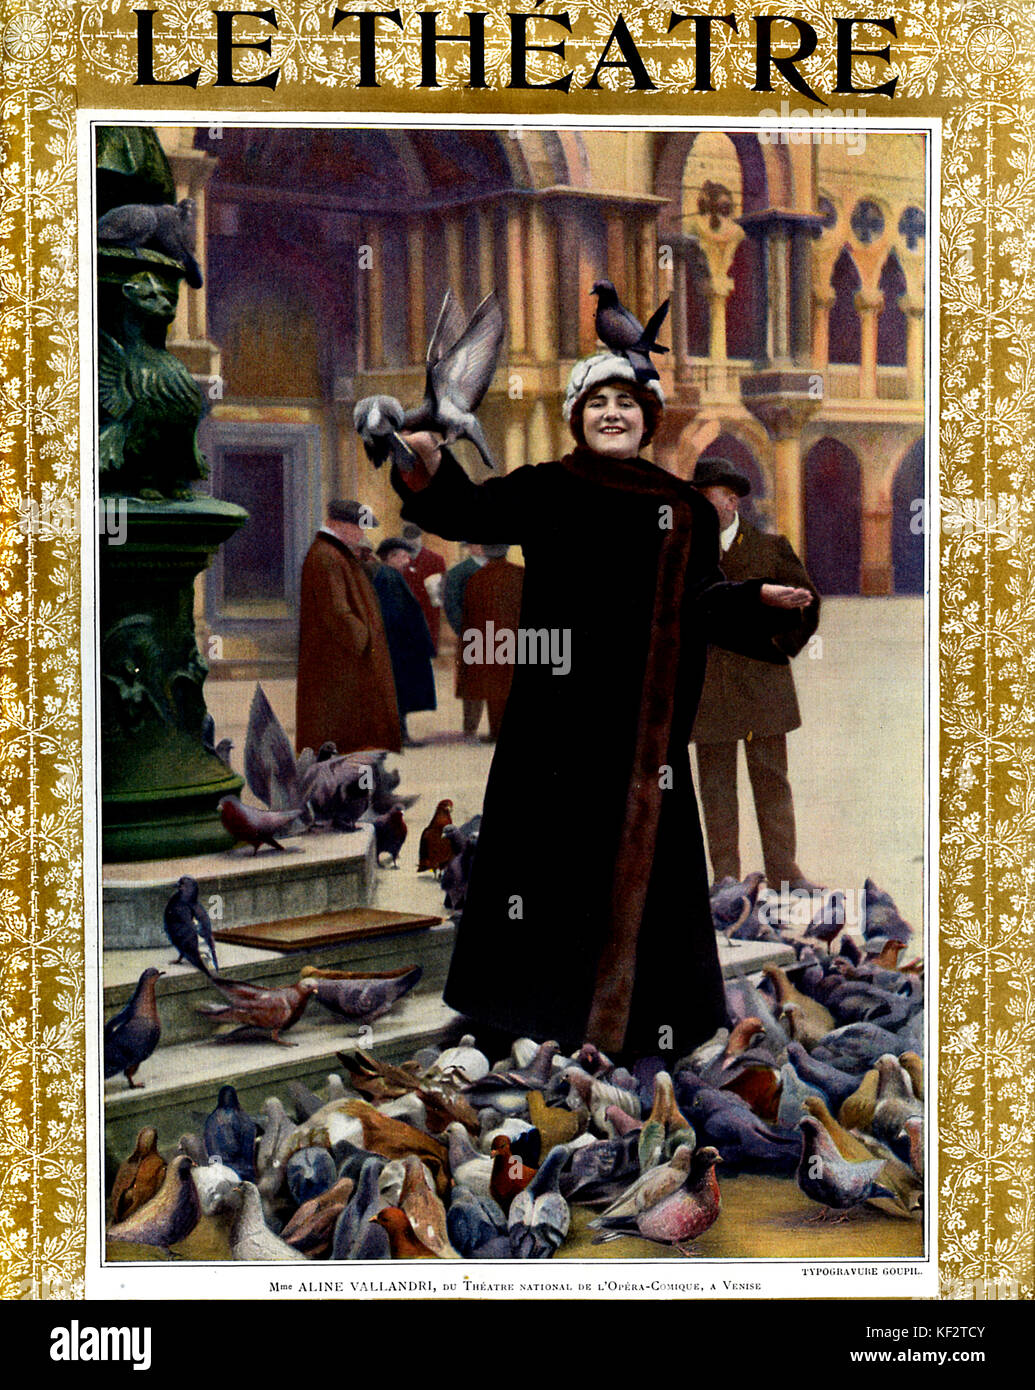 Aline Vallandri actrice du théâtre national de l 'Opéra Comique, sur la Piazza San Marco, Venise, entouré par les pigeons. Couvrir de Le Théâtre, mai 1913. Banque D'Images